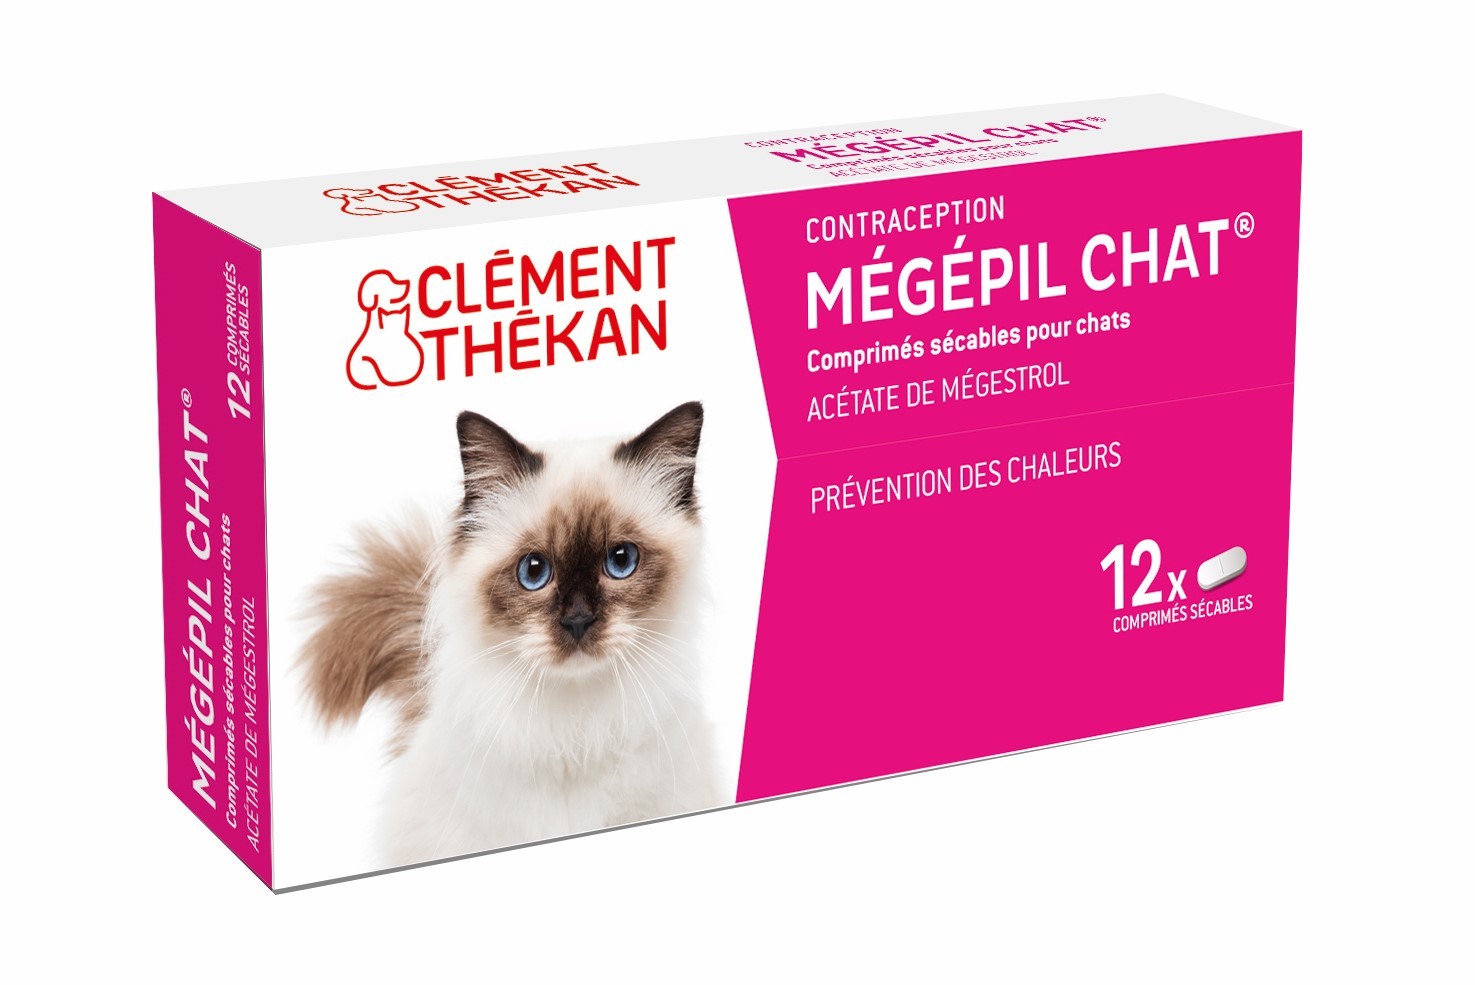 MEGEPIL Chat pilule